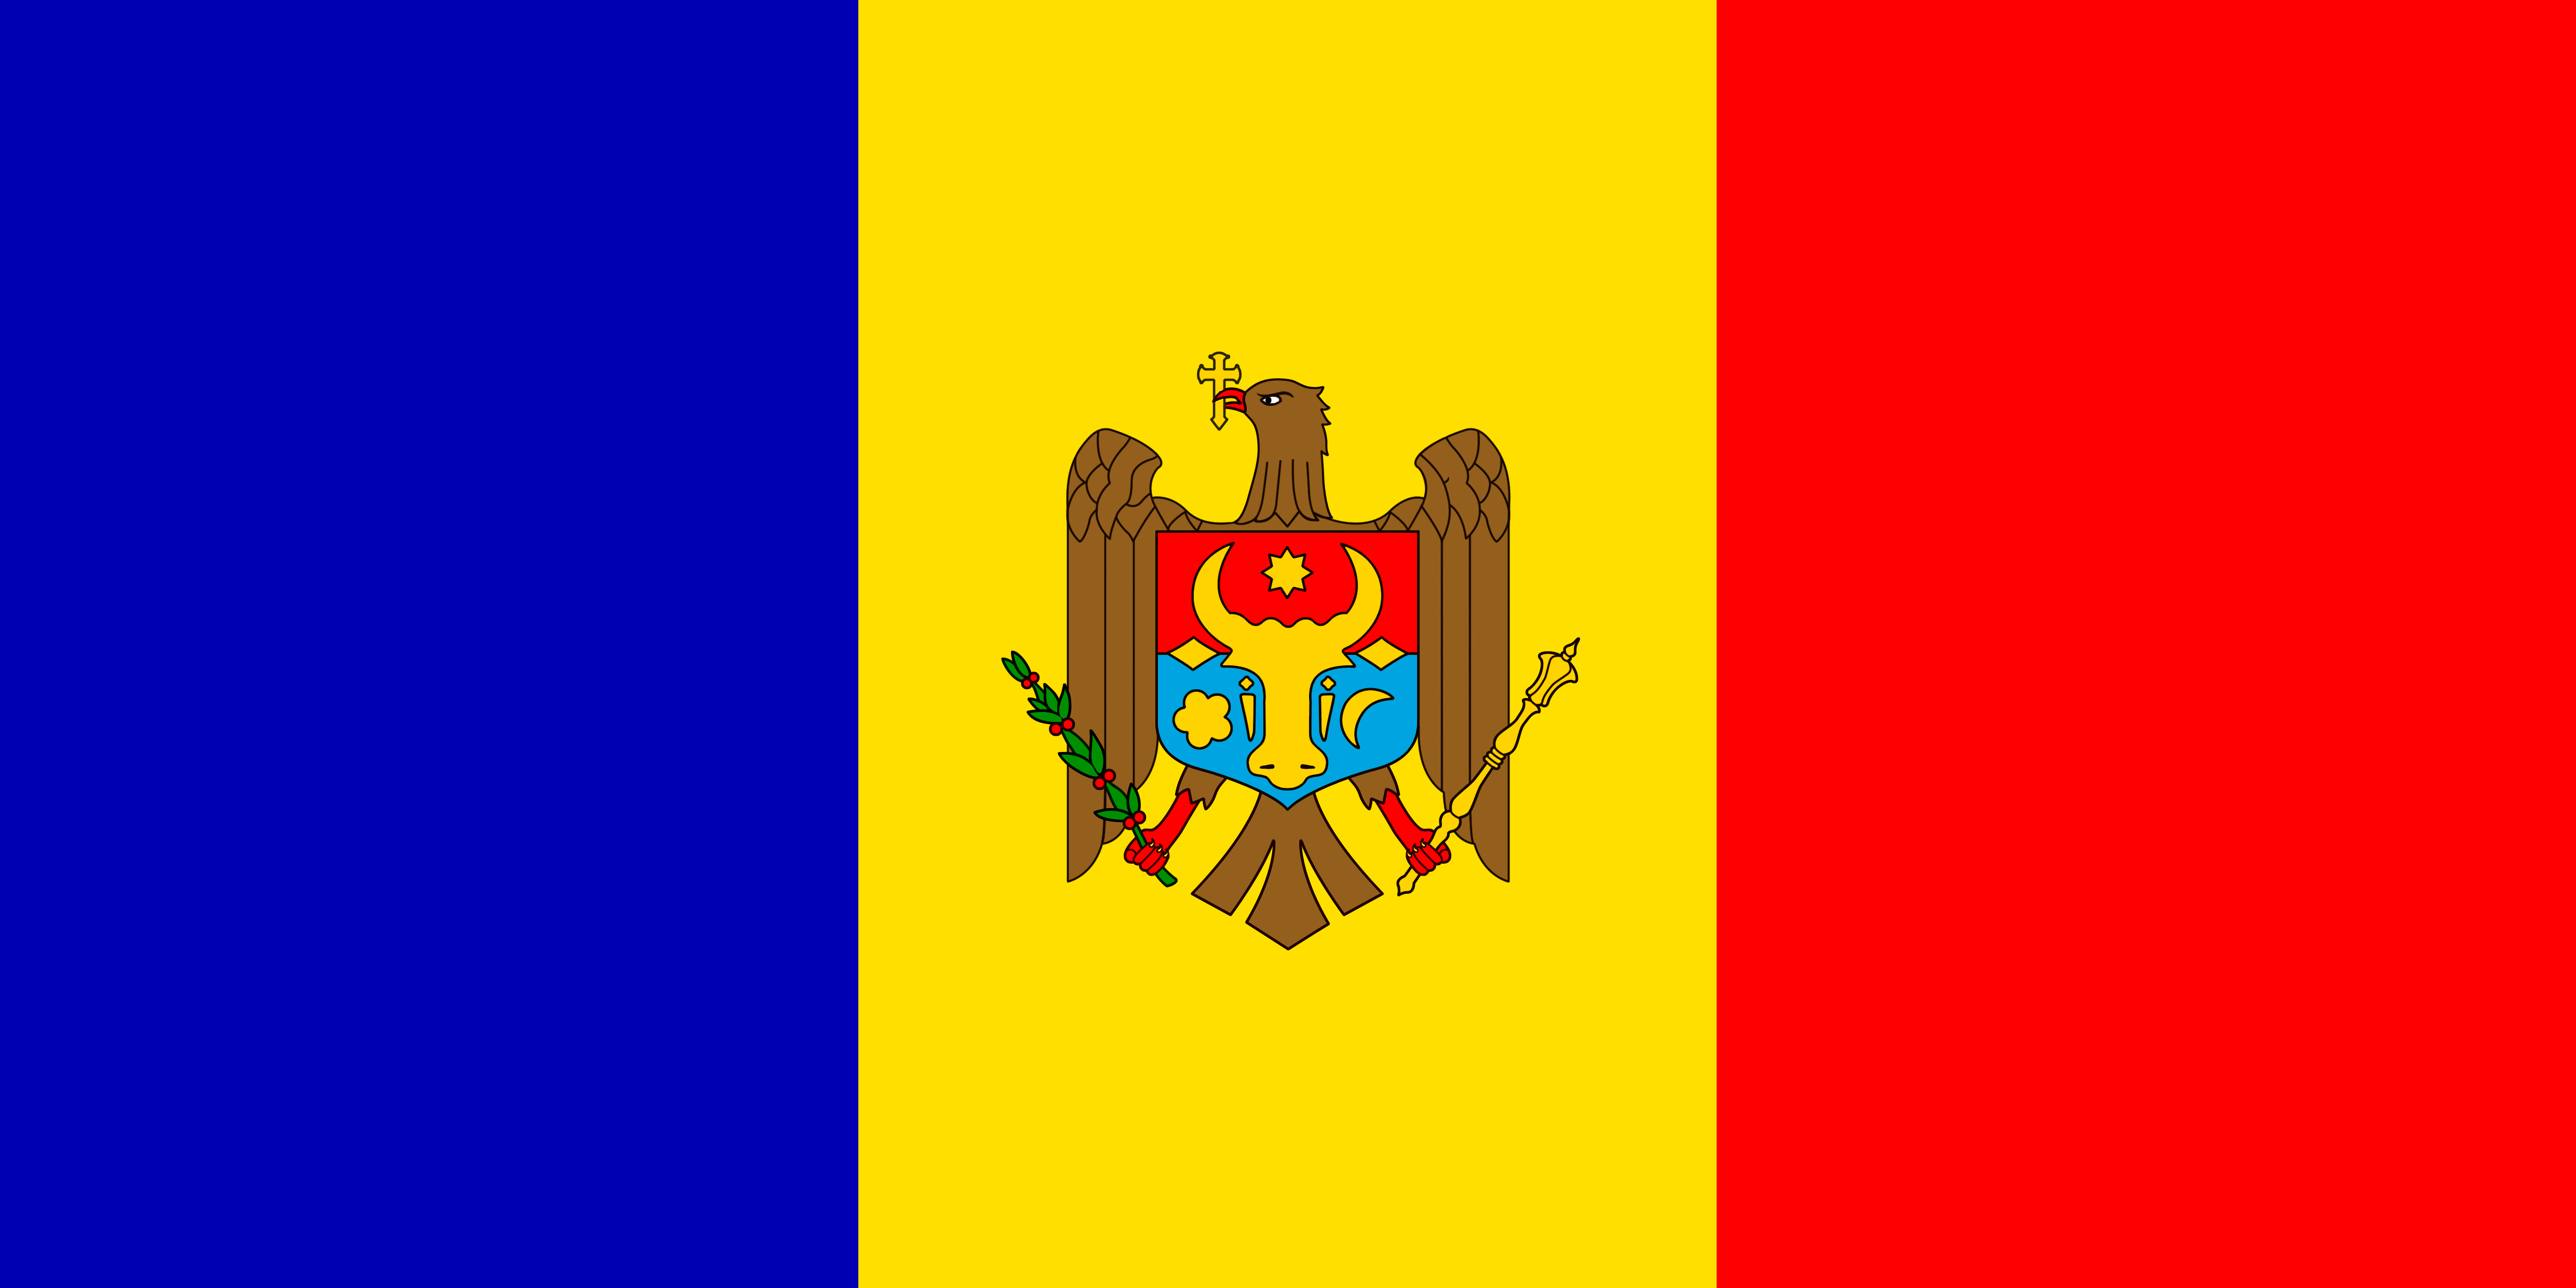 15 января 2016 года Директор МДК В.Н.Понявин в рамках визита в Республику Молдова встретился с Председателем Национального Дельфийского совета Республики Молдова, генеральным секретарем Национальной комиссии Республики Молдова по делам ЮНЕСКО  К.В.Руснако